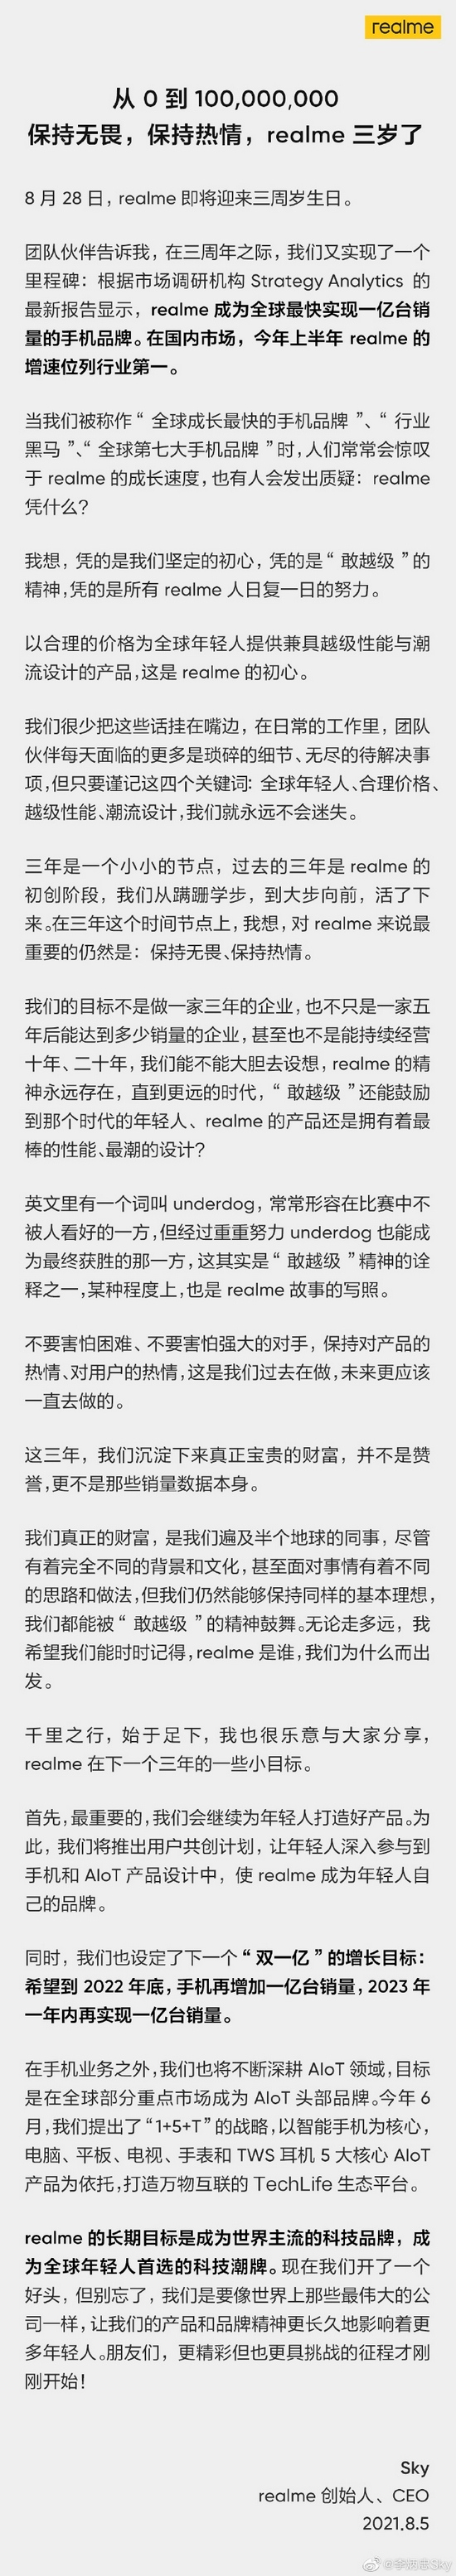 realme李炳忠希望到2022年底手机再增加1亿台销量